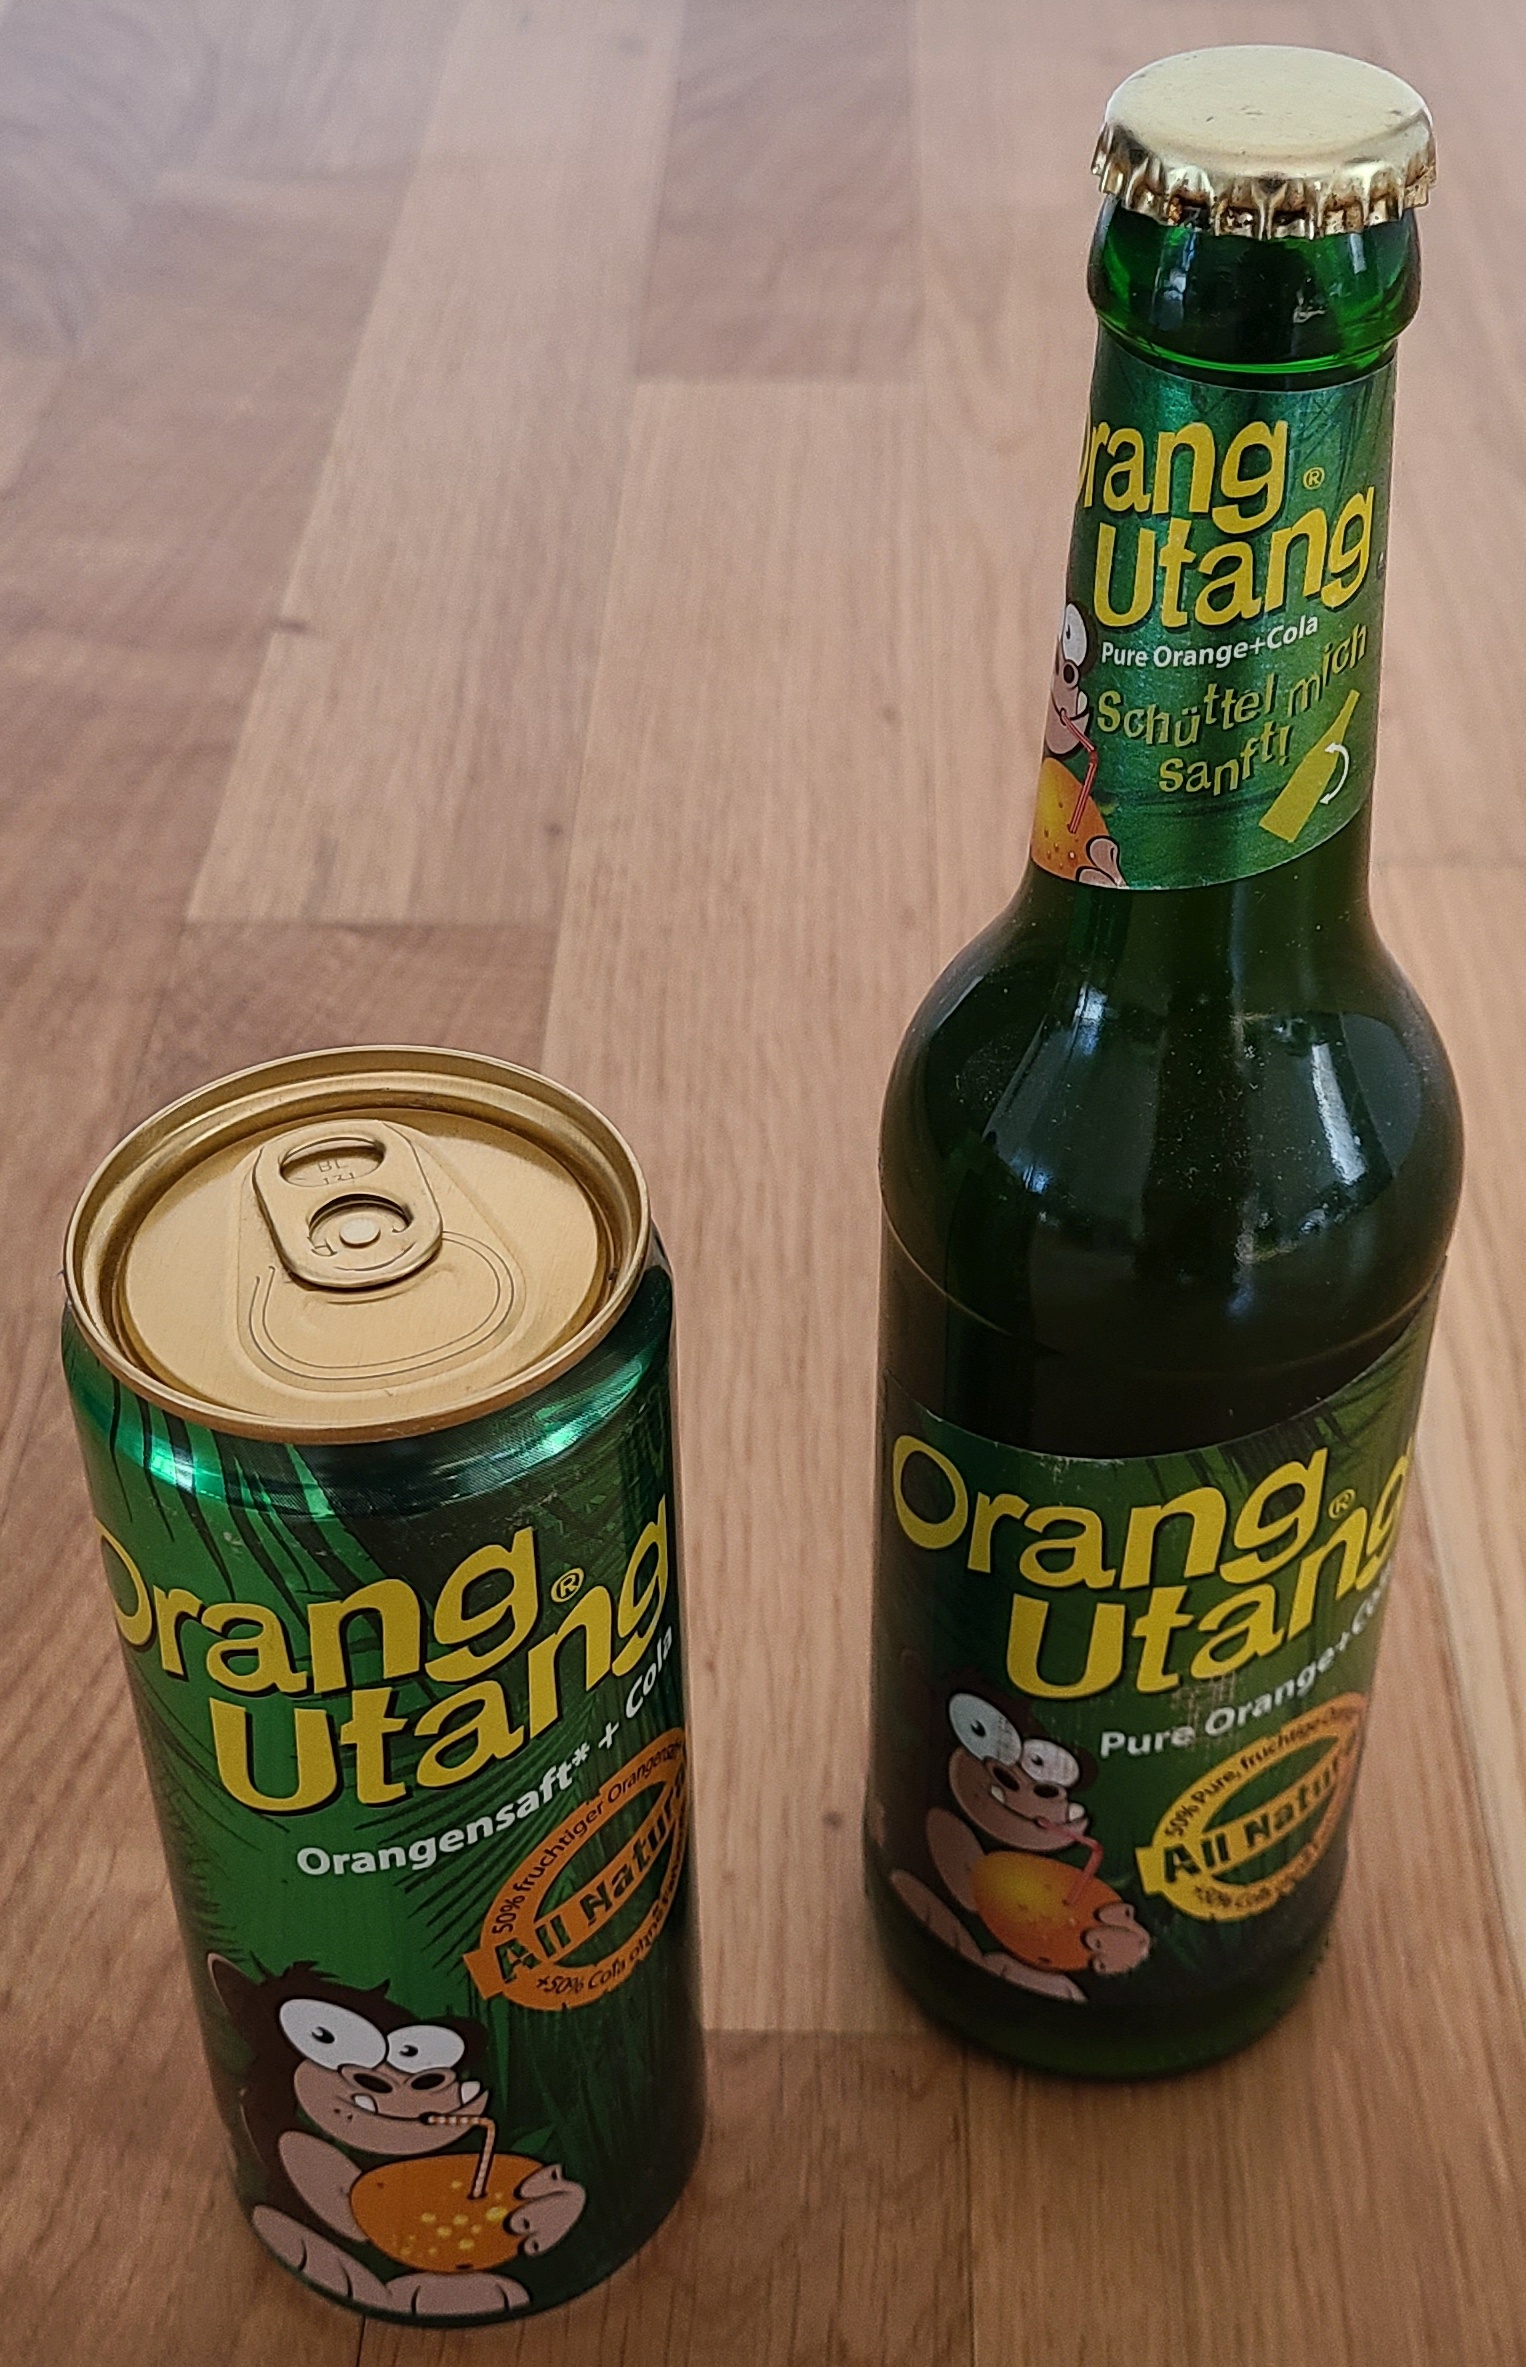 Vorschaubild für Datei:OrangUtang-Getränke-Vorderseiten.jpg